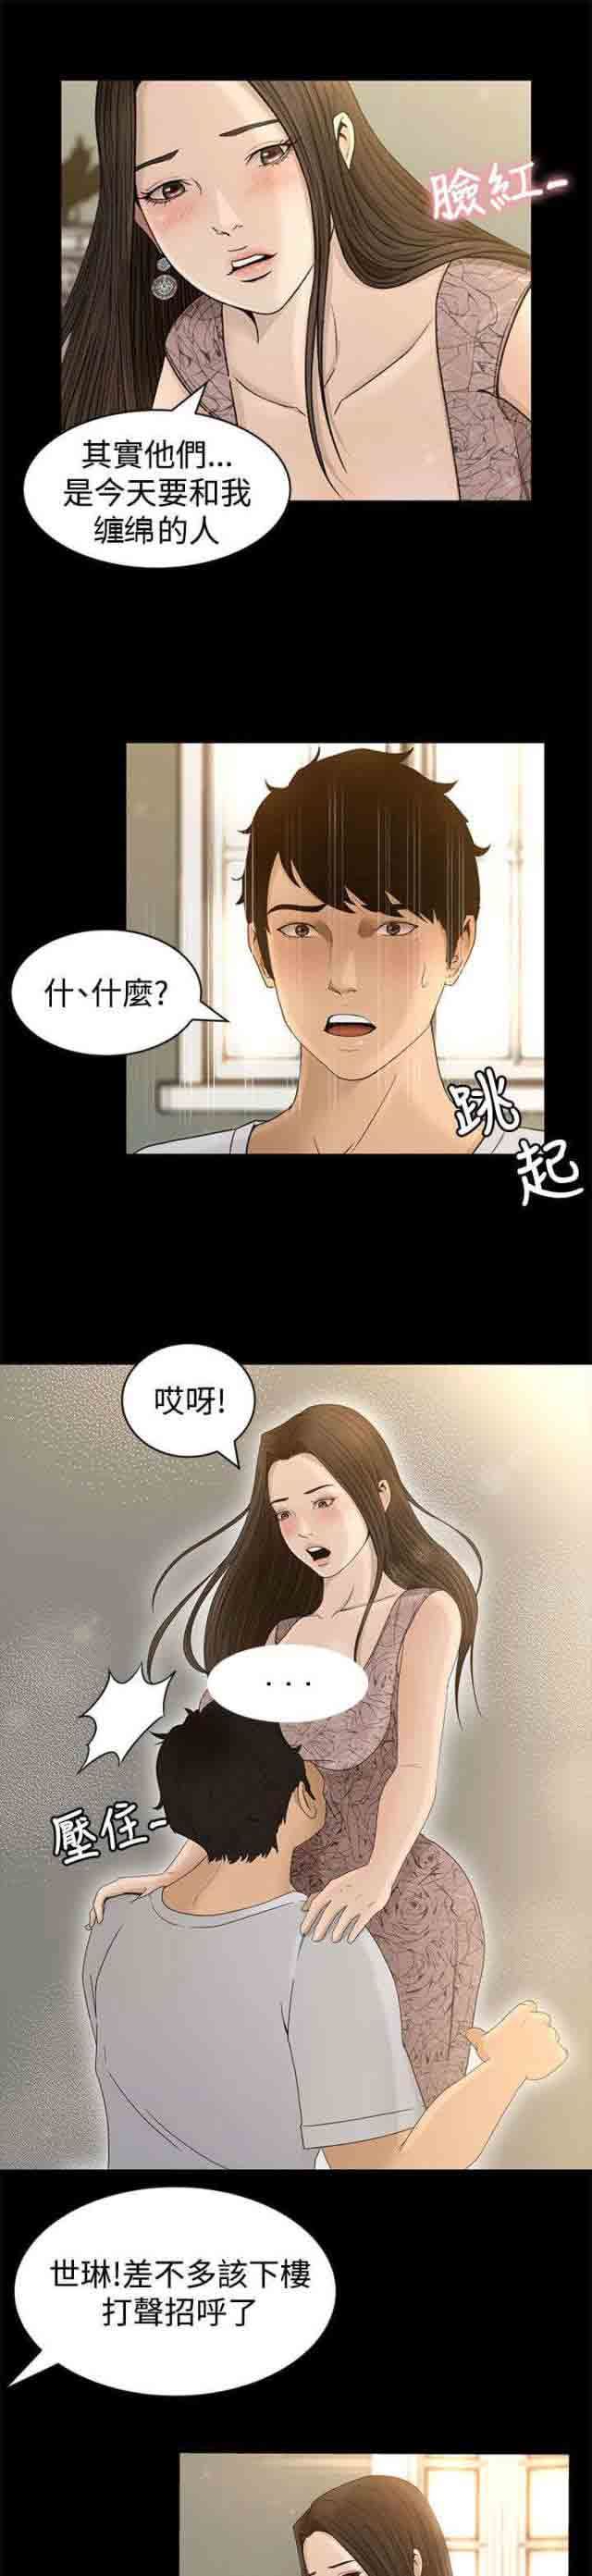 韩国污漫画 獵人莊園 第6话服侍 8